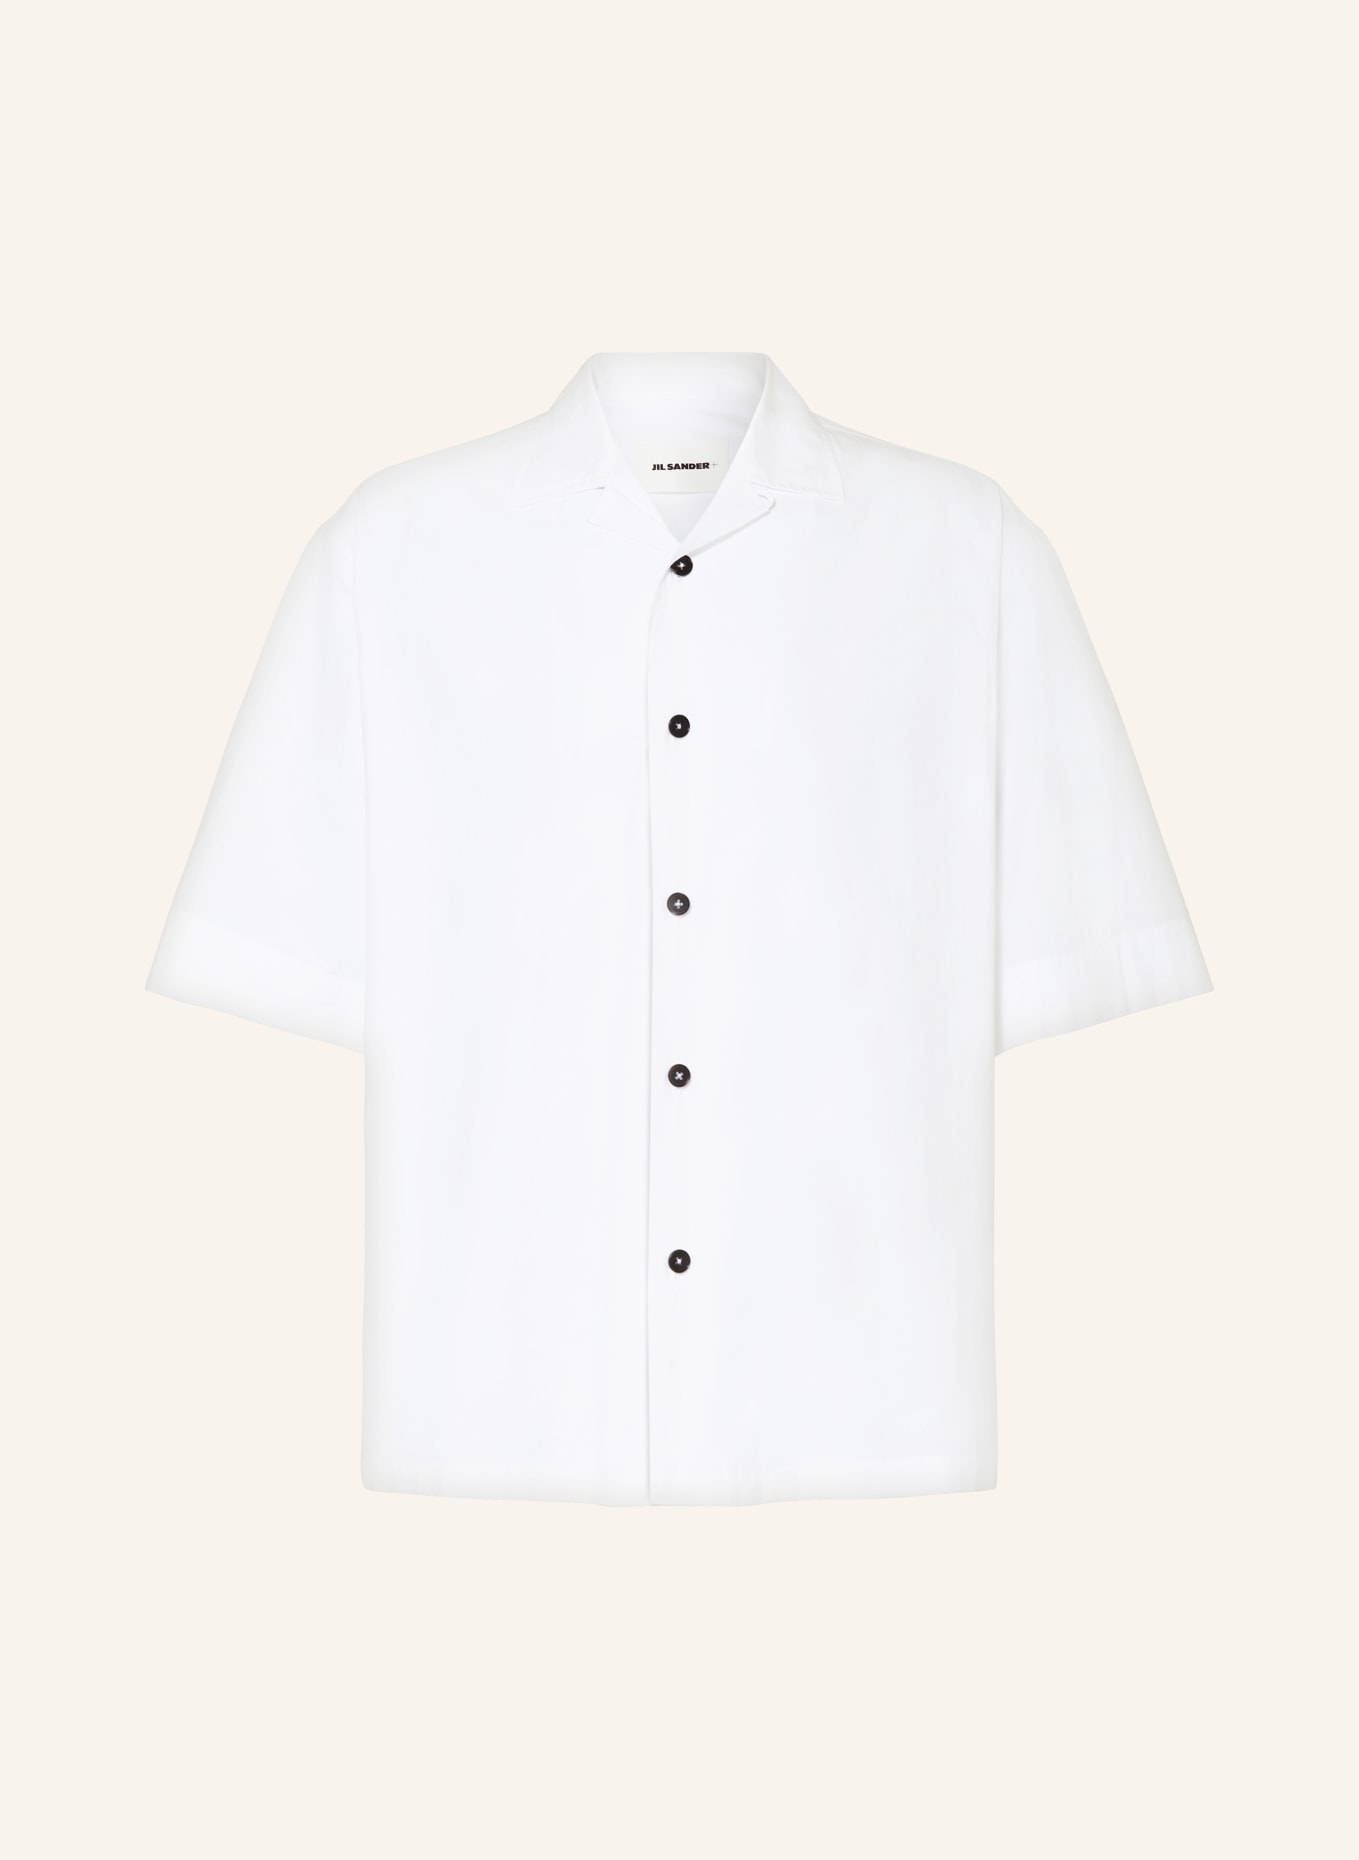 JIL SANDER Short sleeve shirt comfort fit, Color: WHITE (Image 1)